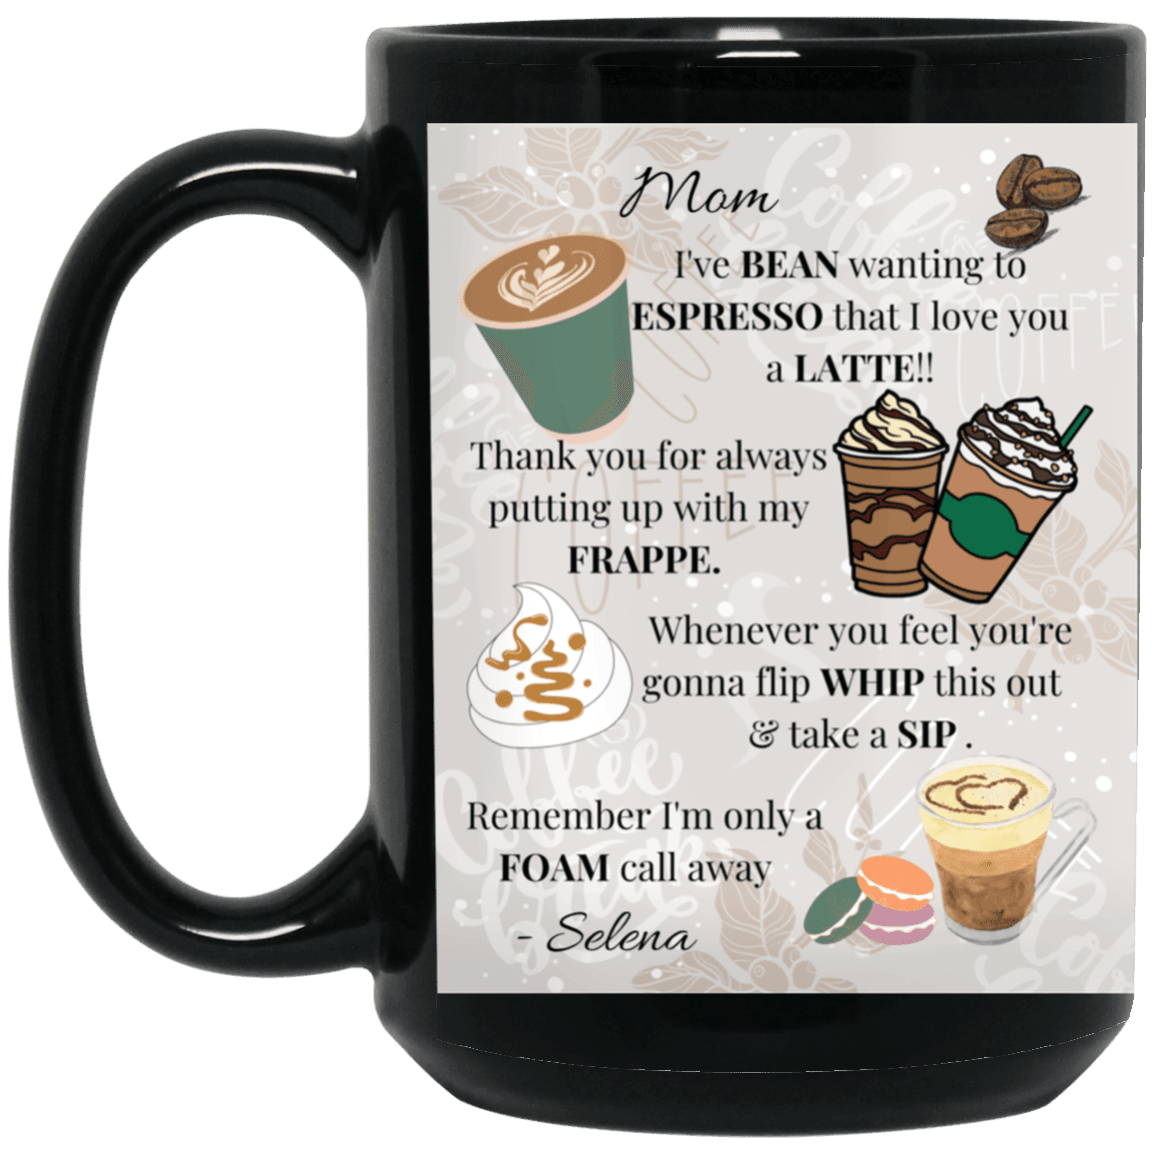 2 oz. Espresso Personalized Cups